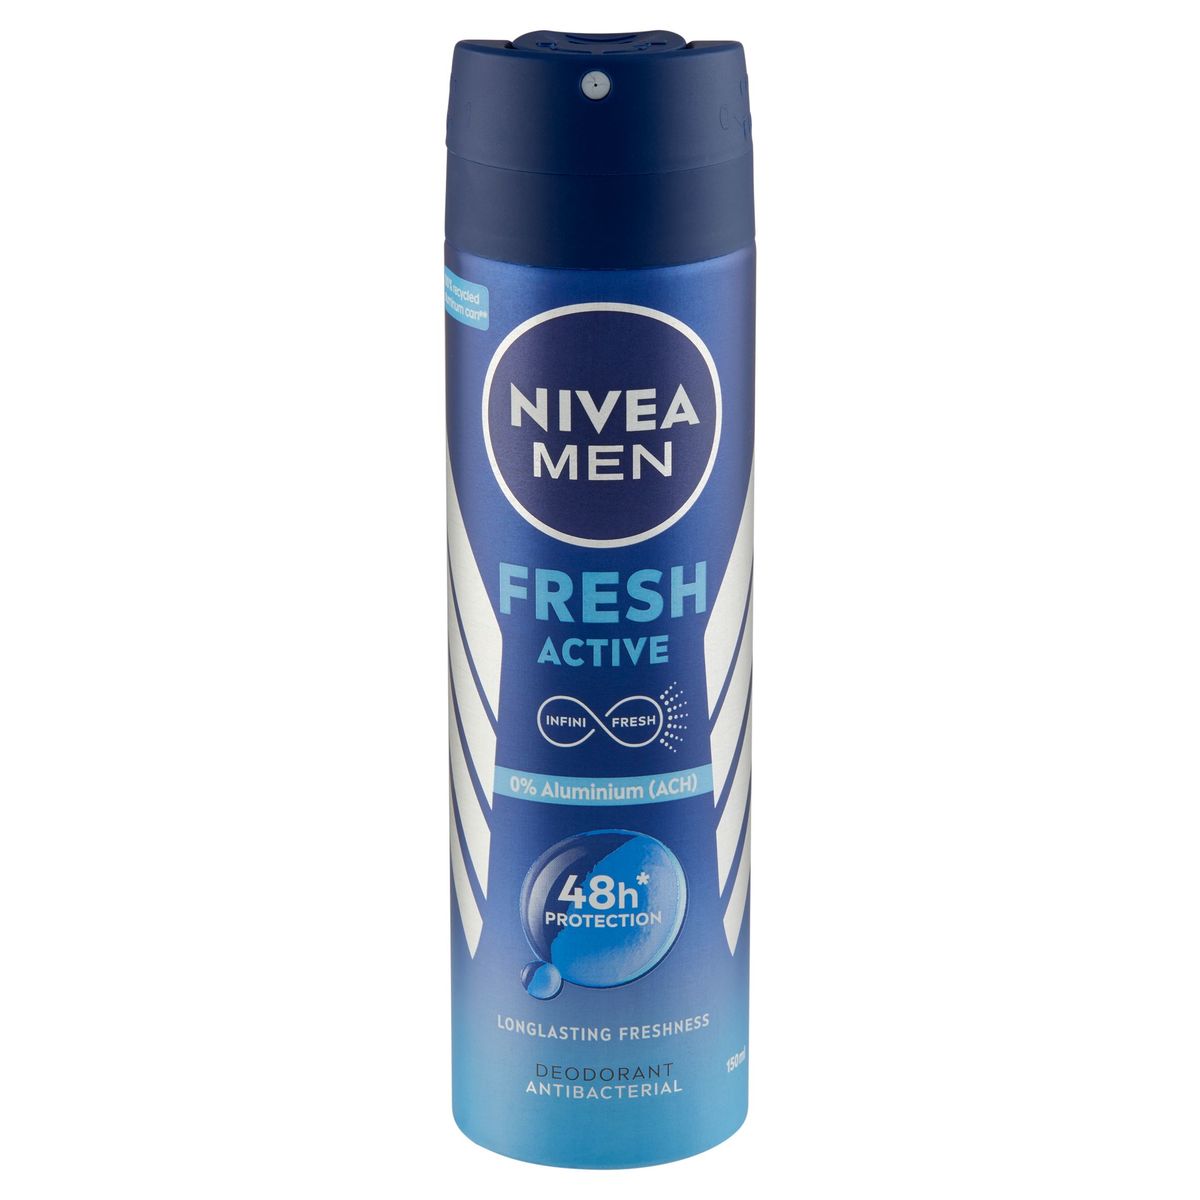 Nivea Men Fresh Active Deodorant Antibacterial 150 ml